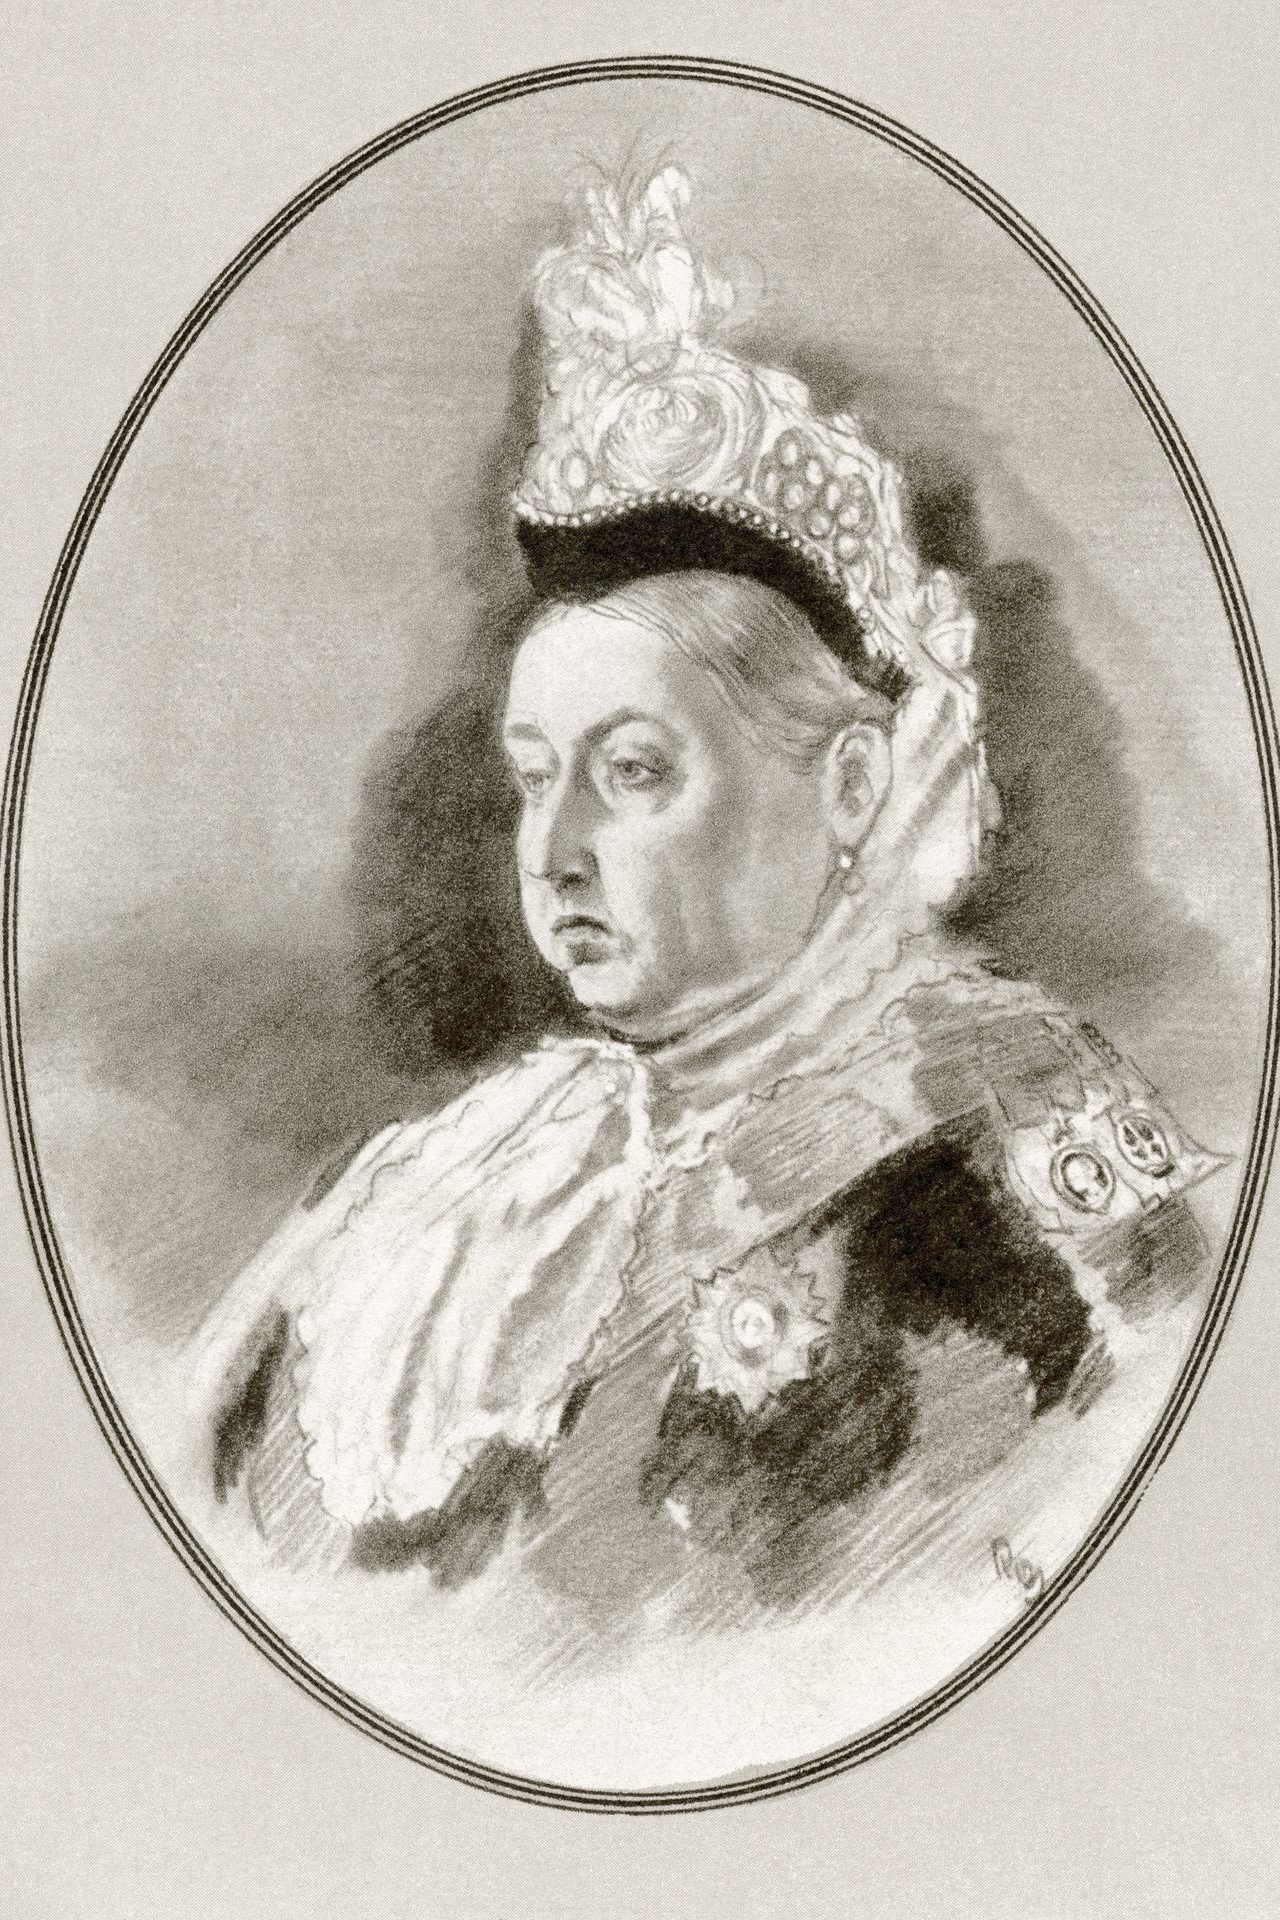 Victoria (Royaume-Uni, 63 ans de 1837 à 1901)